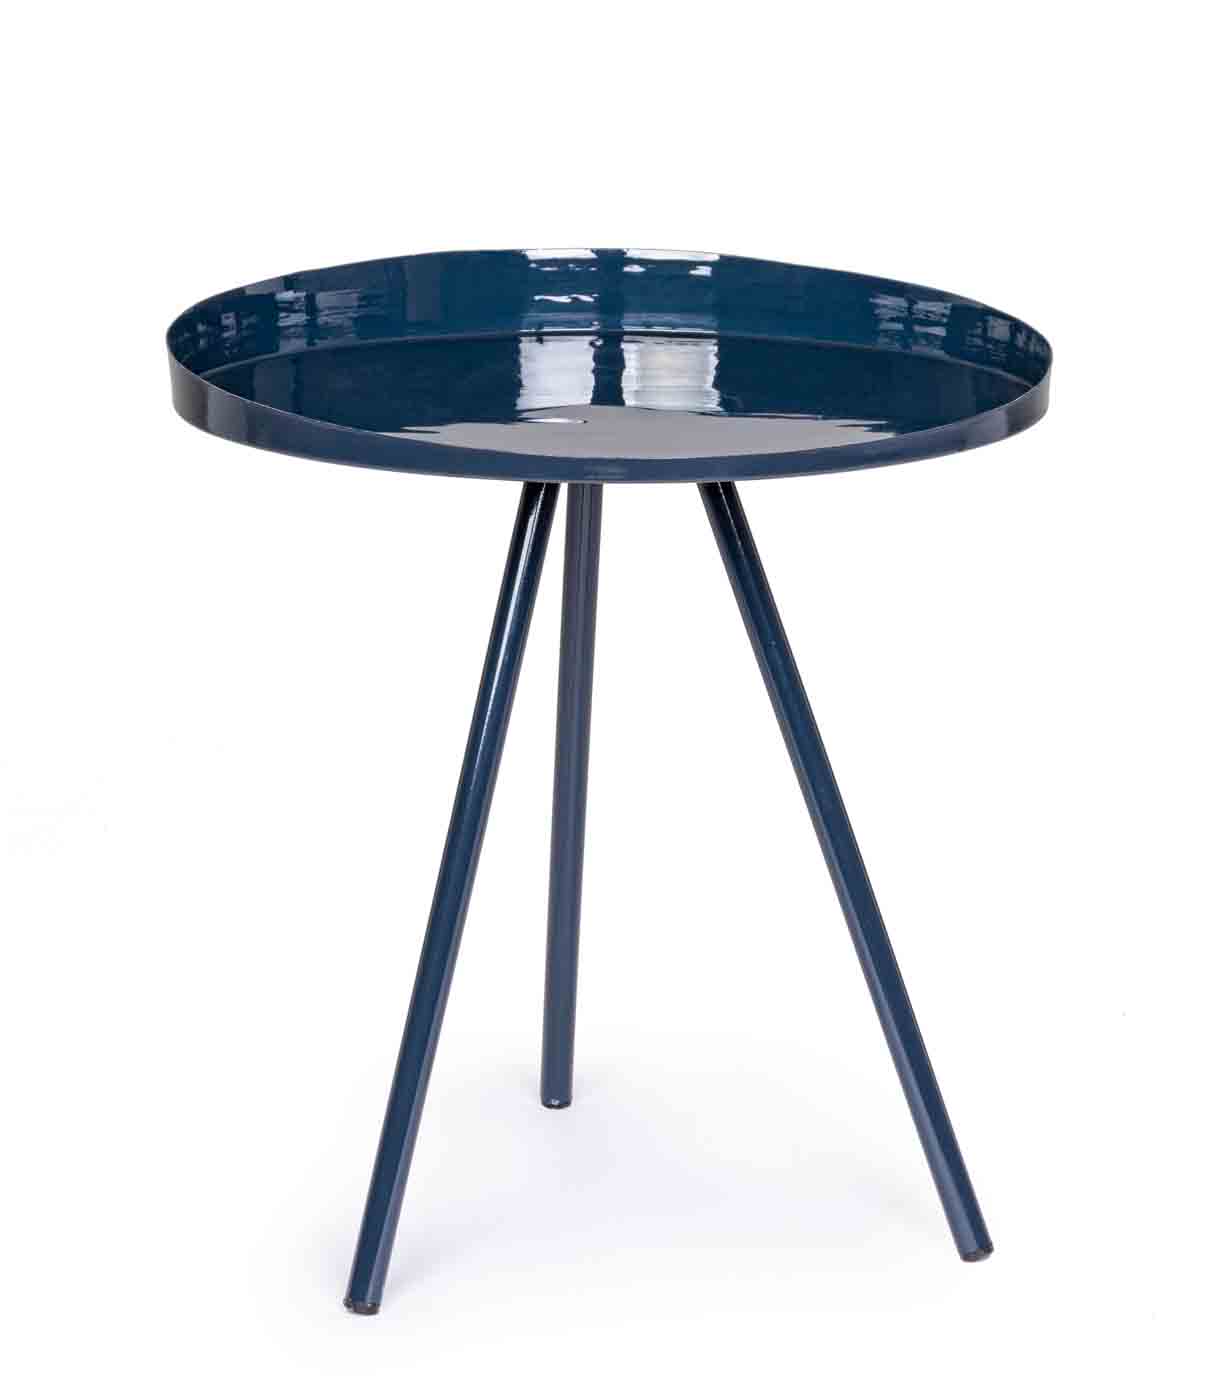 Beistelltisch Anchita gefertigt aus Metall in einem dunkelblauen Farbton. Modernes Design. Marke Bizotto.